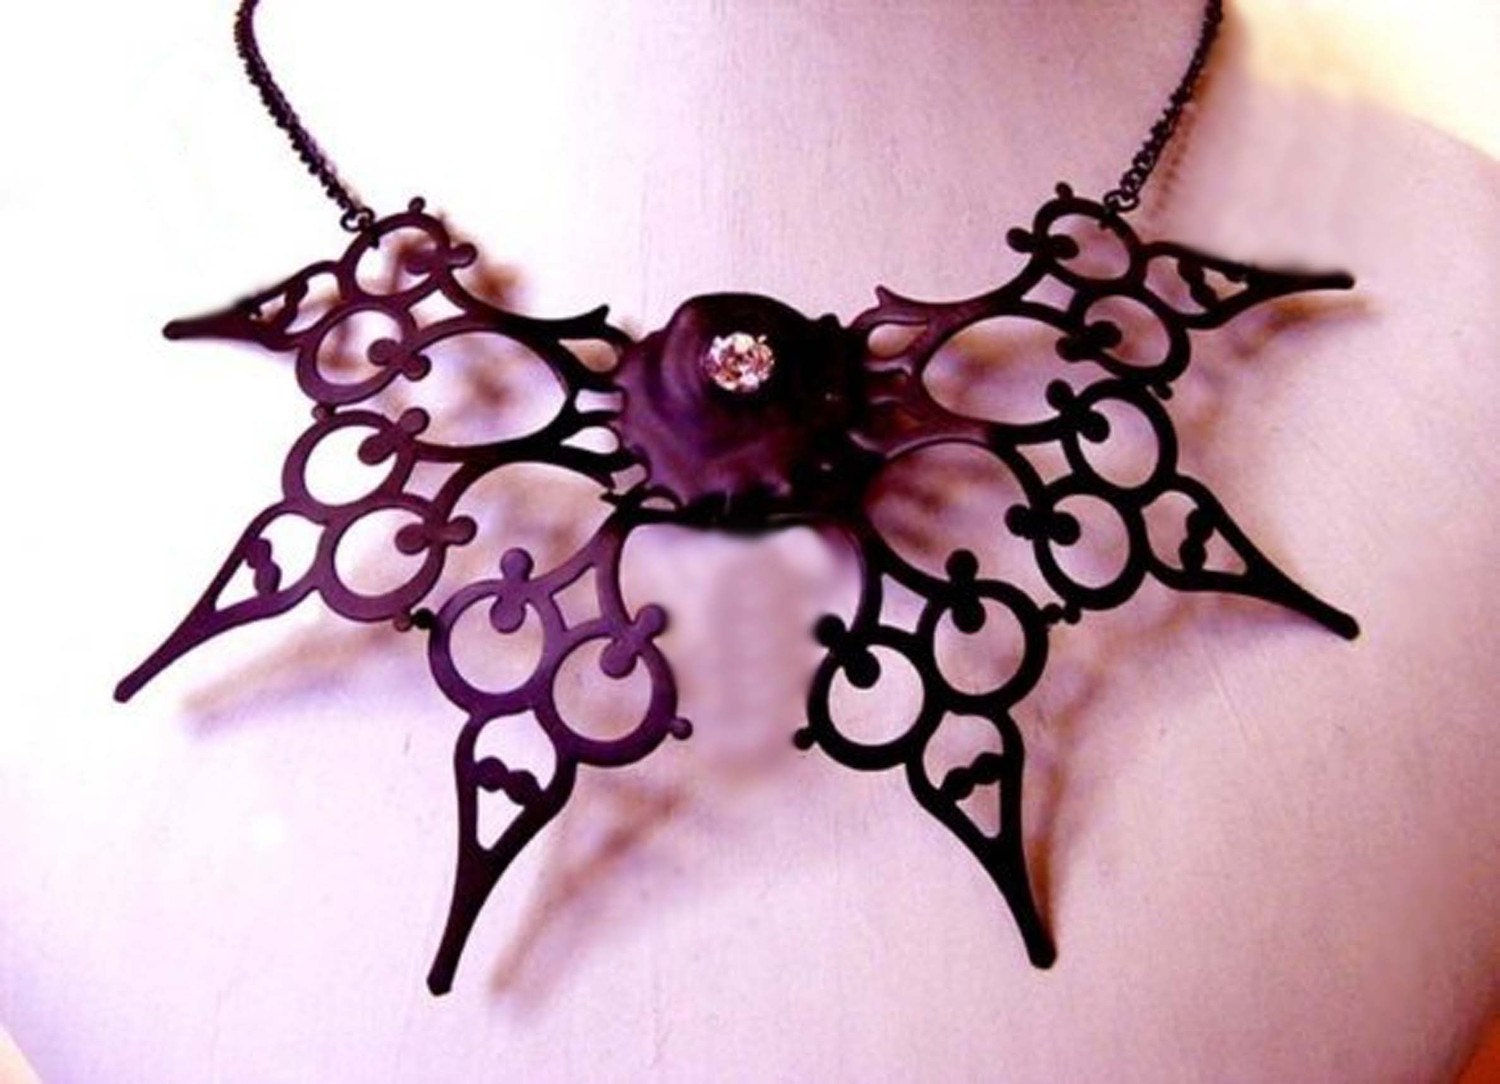 Necklace Neo Victorian- Papillion de la Nuit